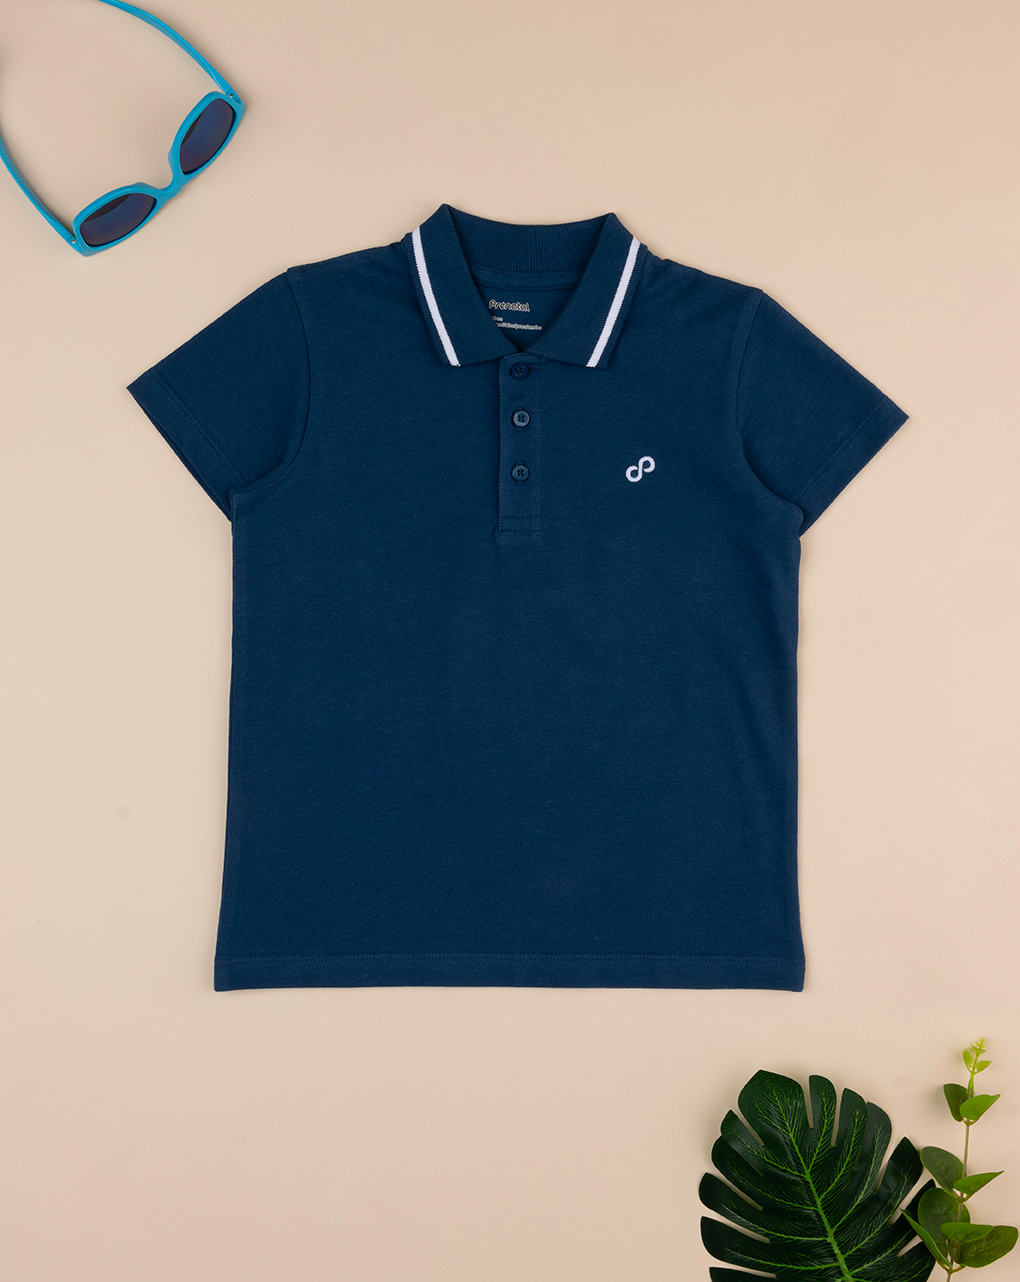 παιδικό t-shirt πόλο μπλε "άπειρο" για αγόρι - Prénatal